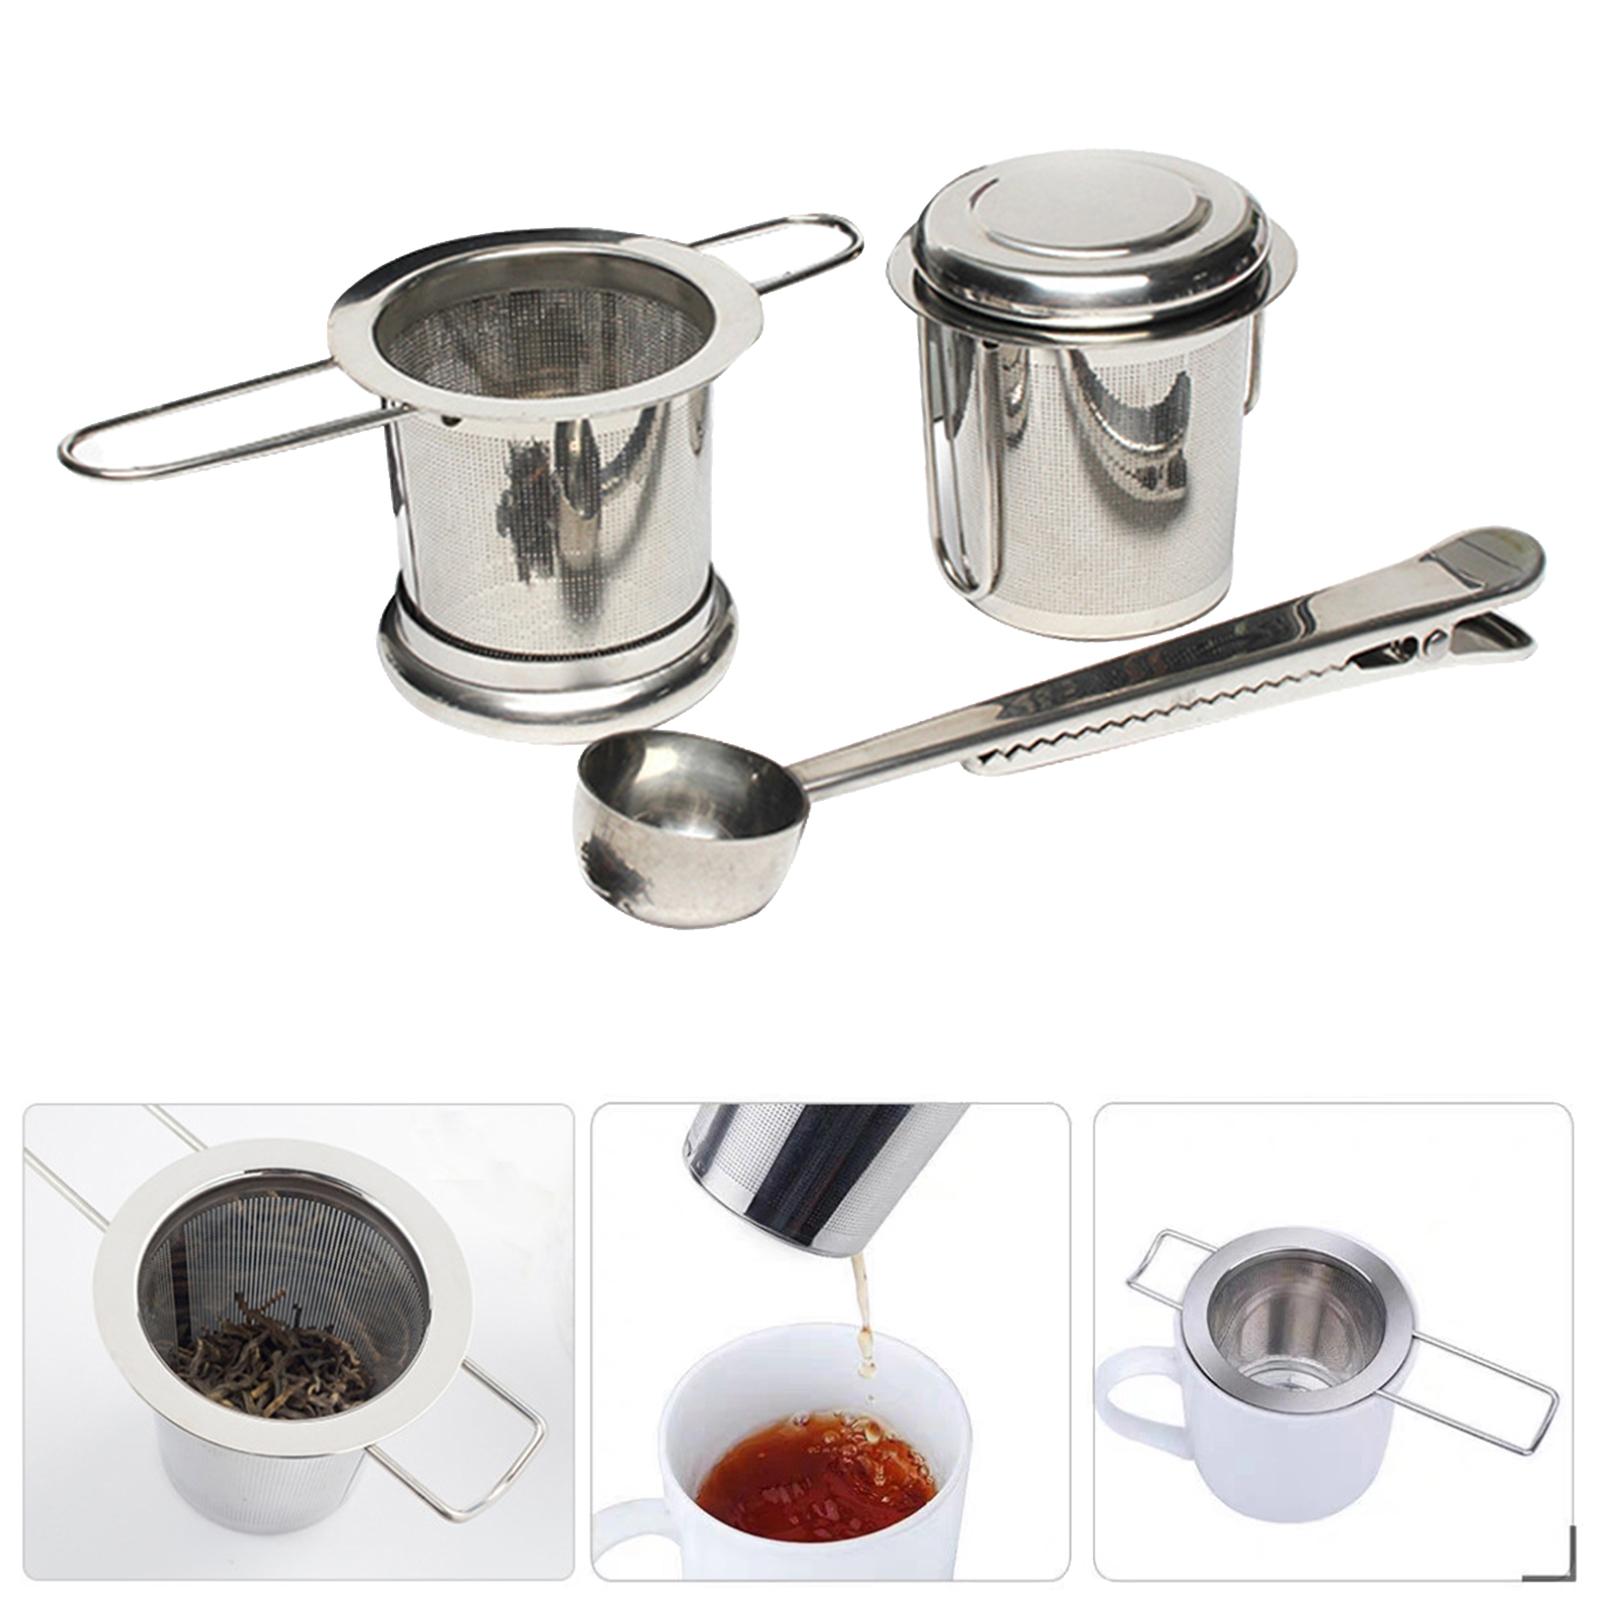 Tea Infuser Fine Mesh Strainer Stainless Steel Mesh Tea Infuser Loose Leaf Filter for Brewing Tea